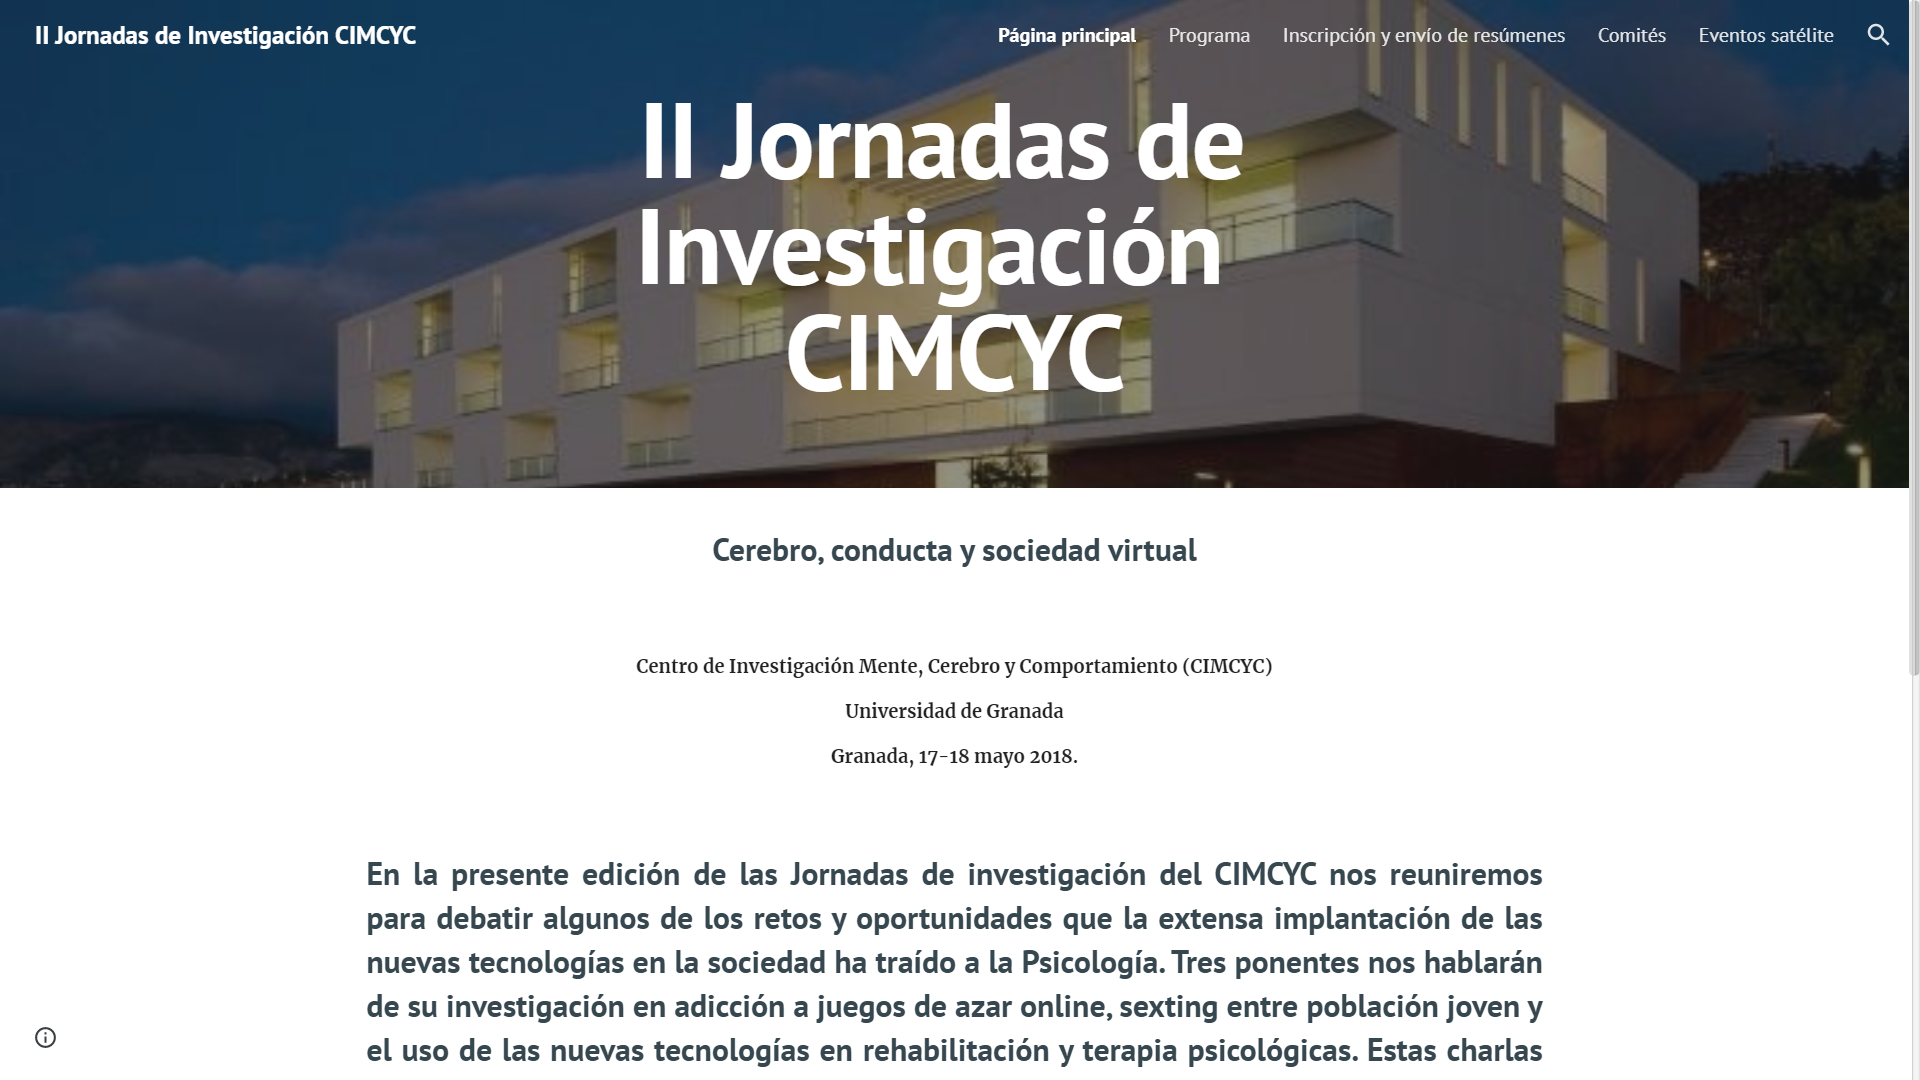 II Jornadas de Investigación  CIMCYC 2018